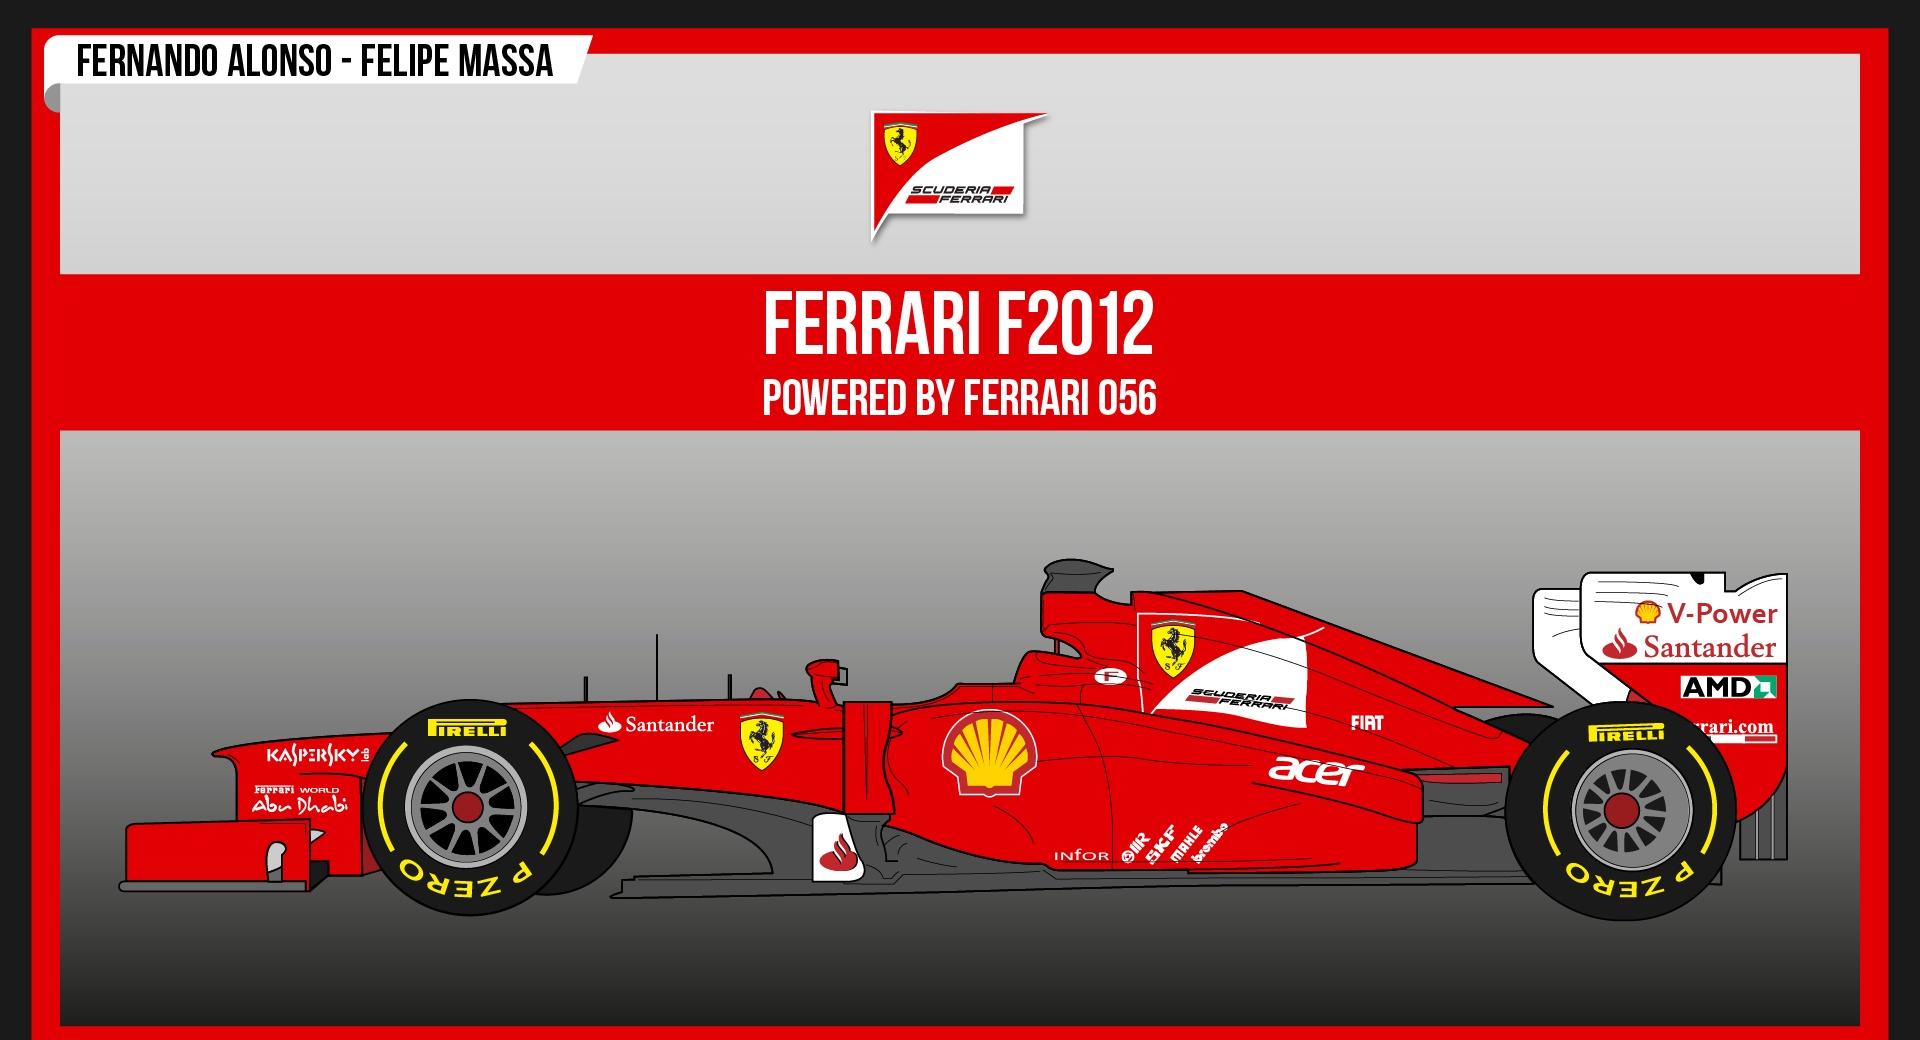 Ferrari F2012 at 1280 x 960 size wallpapers HD quality